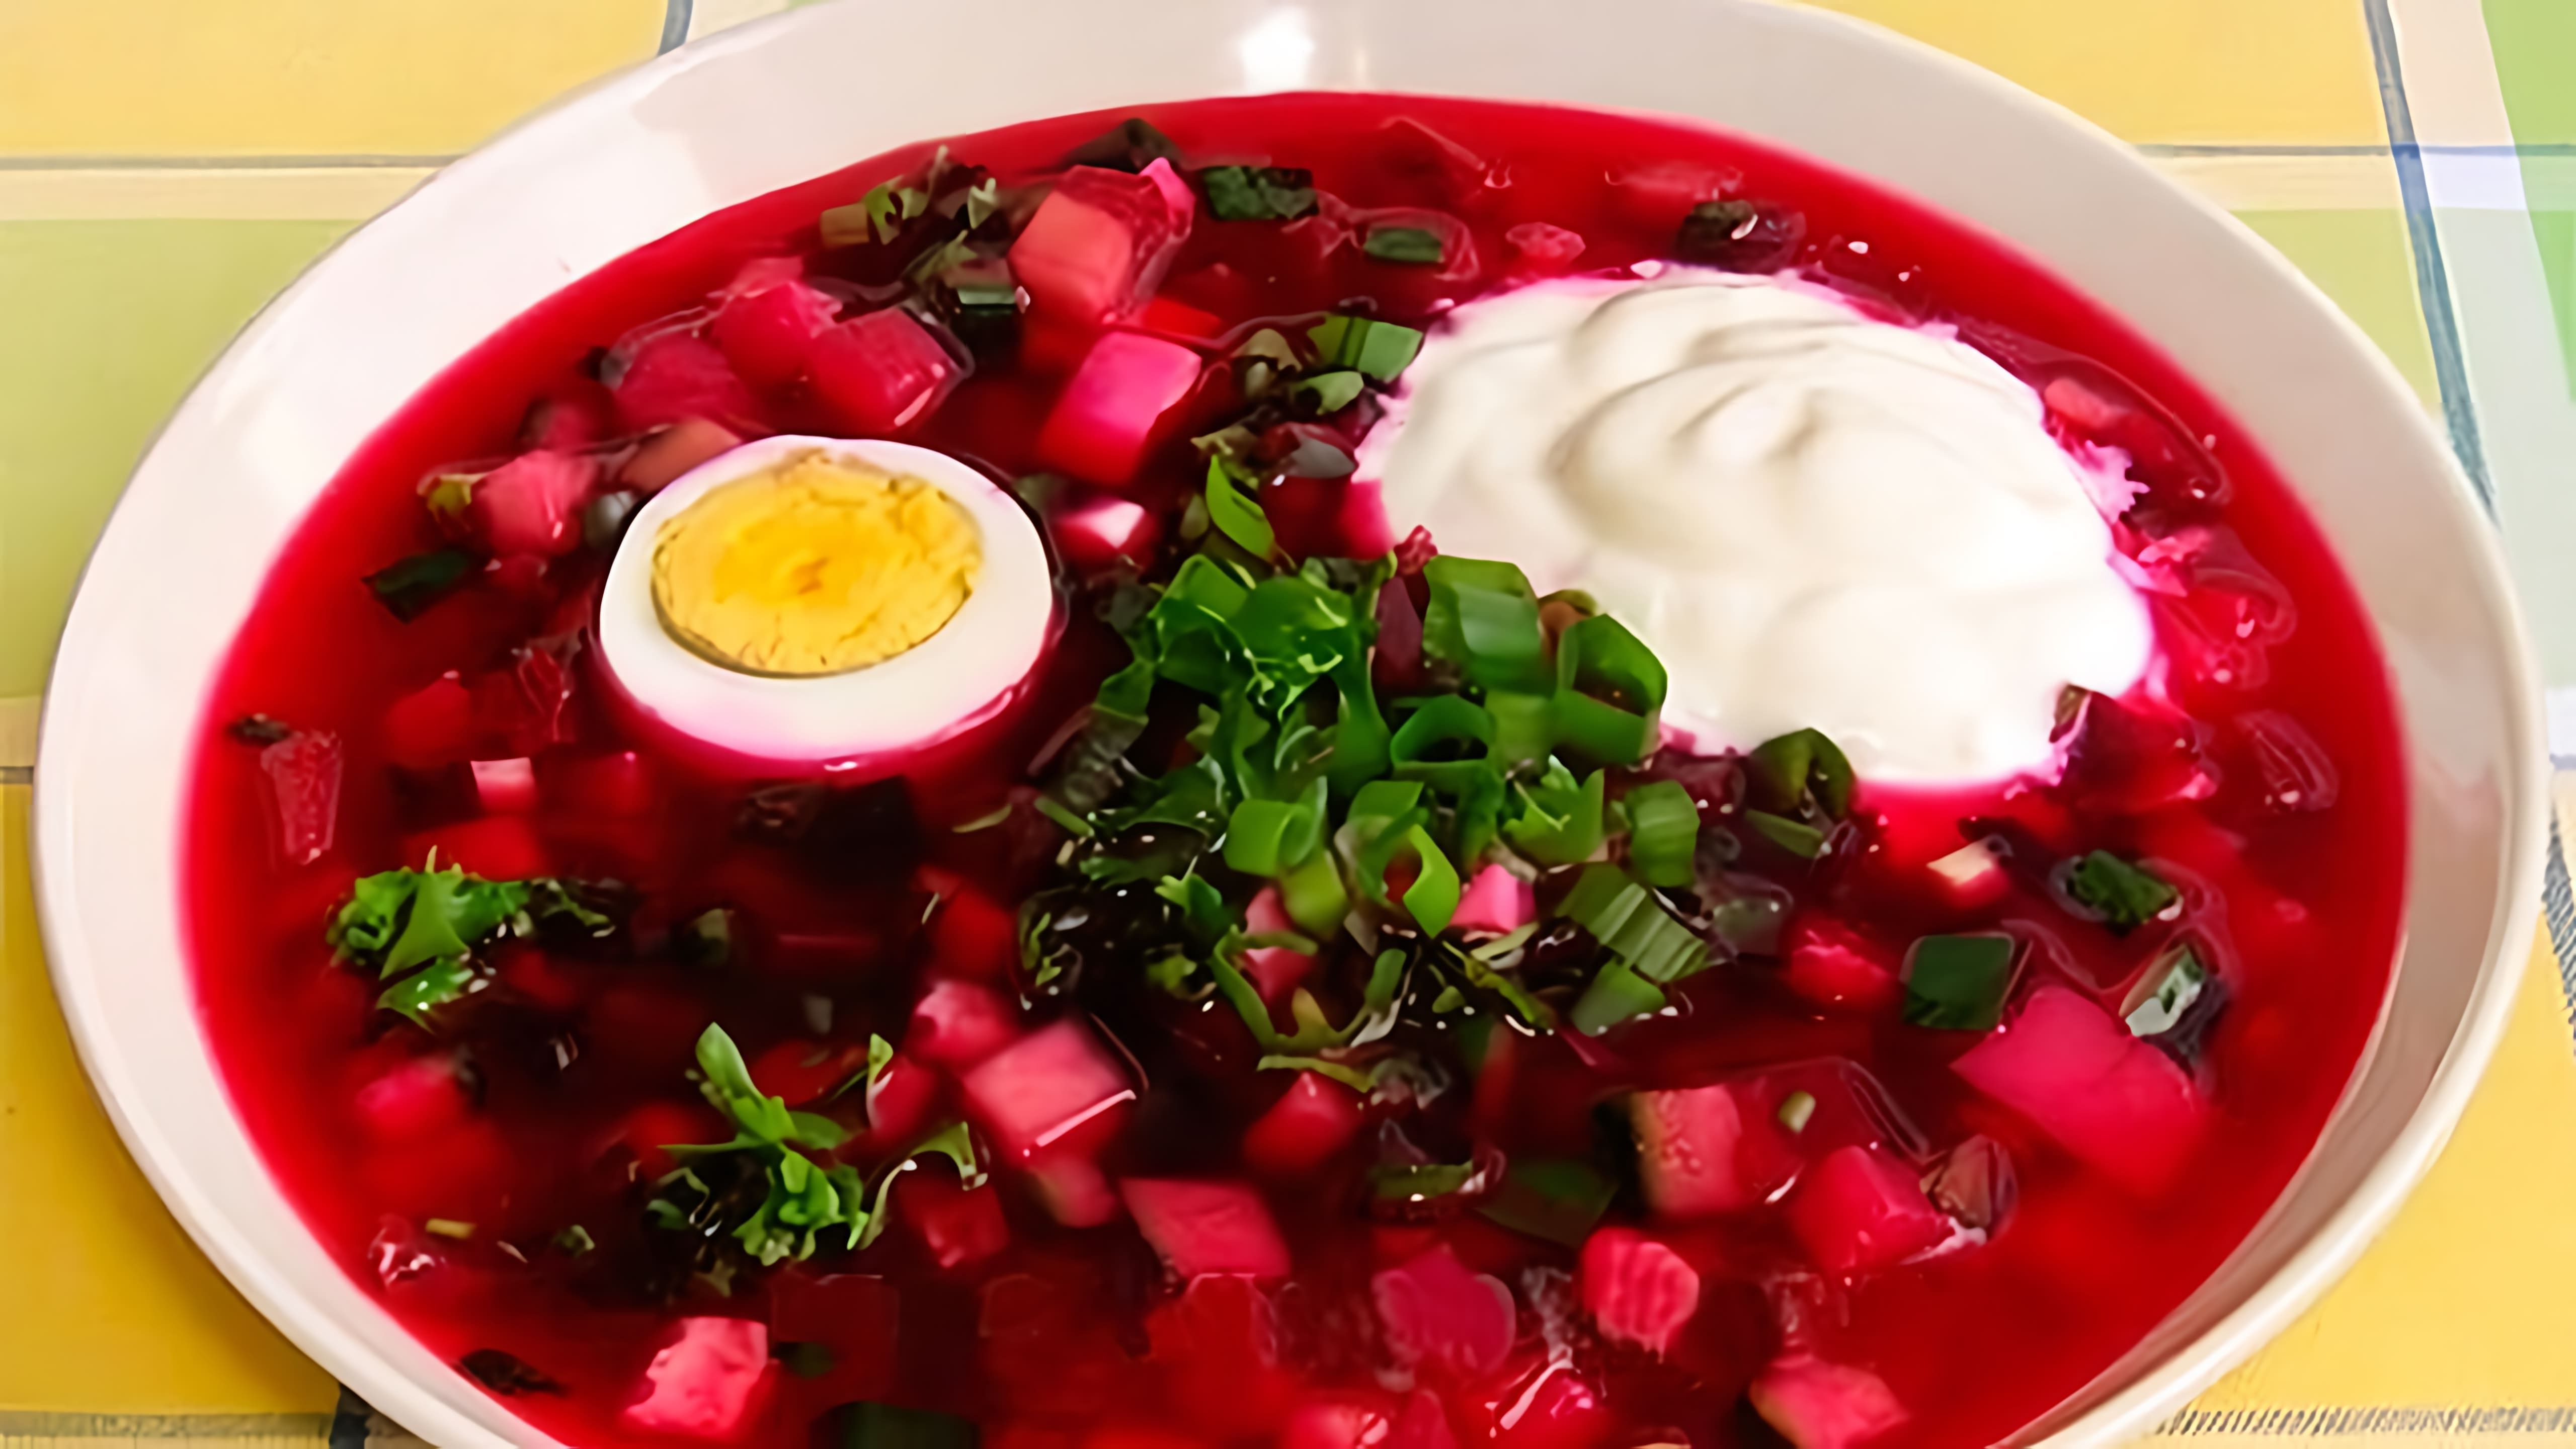 В этом видео демонстрируется рецепт приготовления свекольника - горячего супа из свеклы